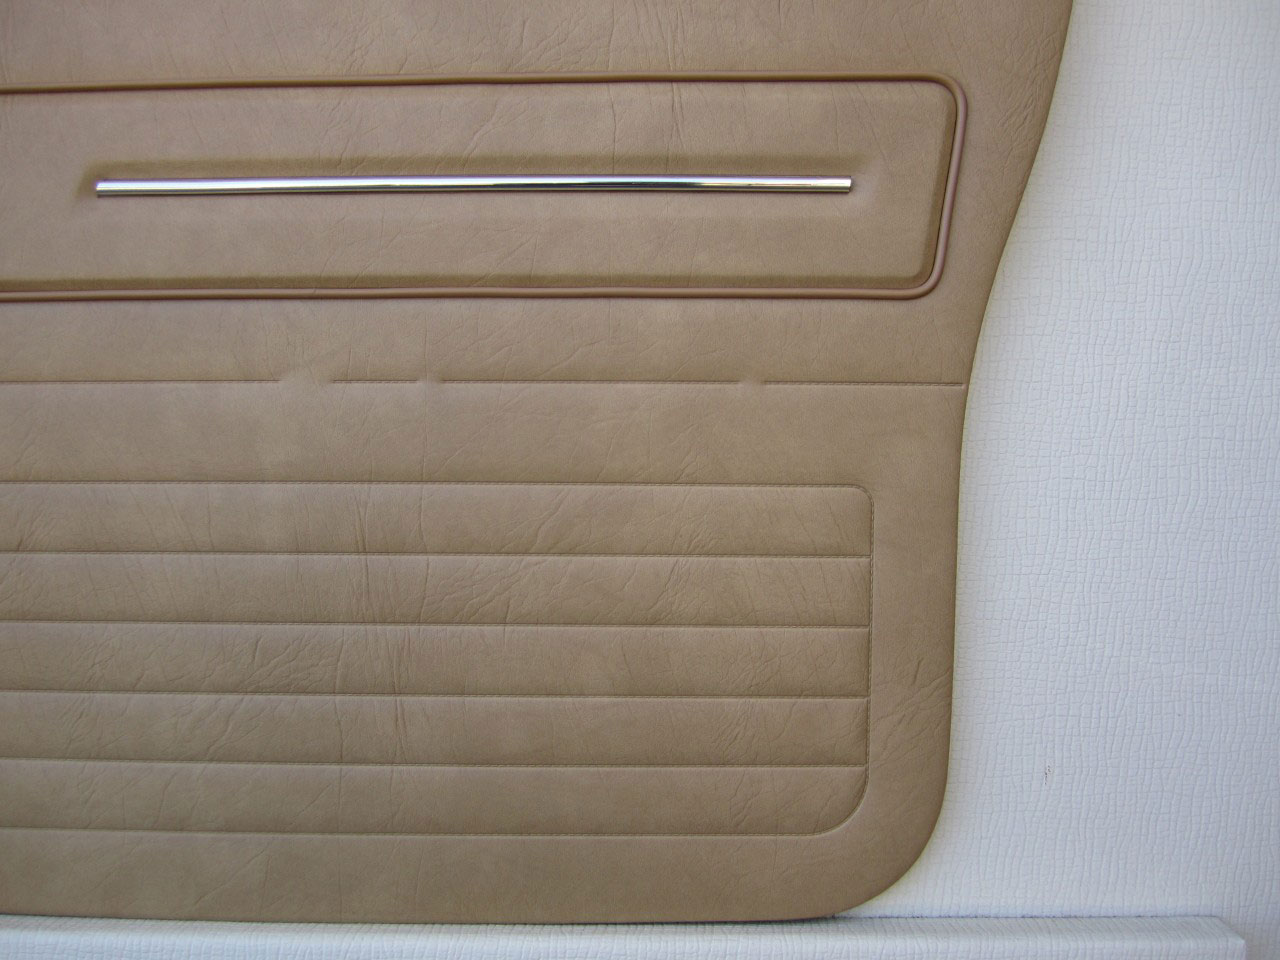 Holden Sandman HZ Sandman Panel Van 63V Buckskin Door Trims (Image 11 of 18)